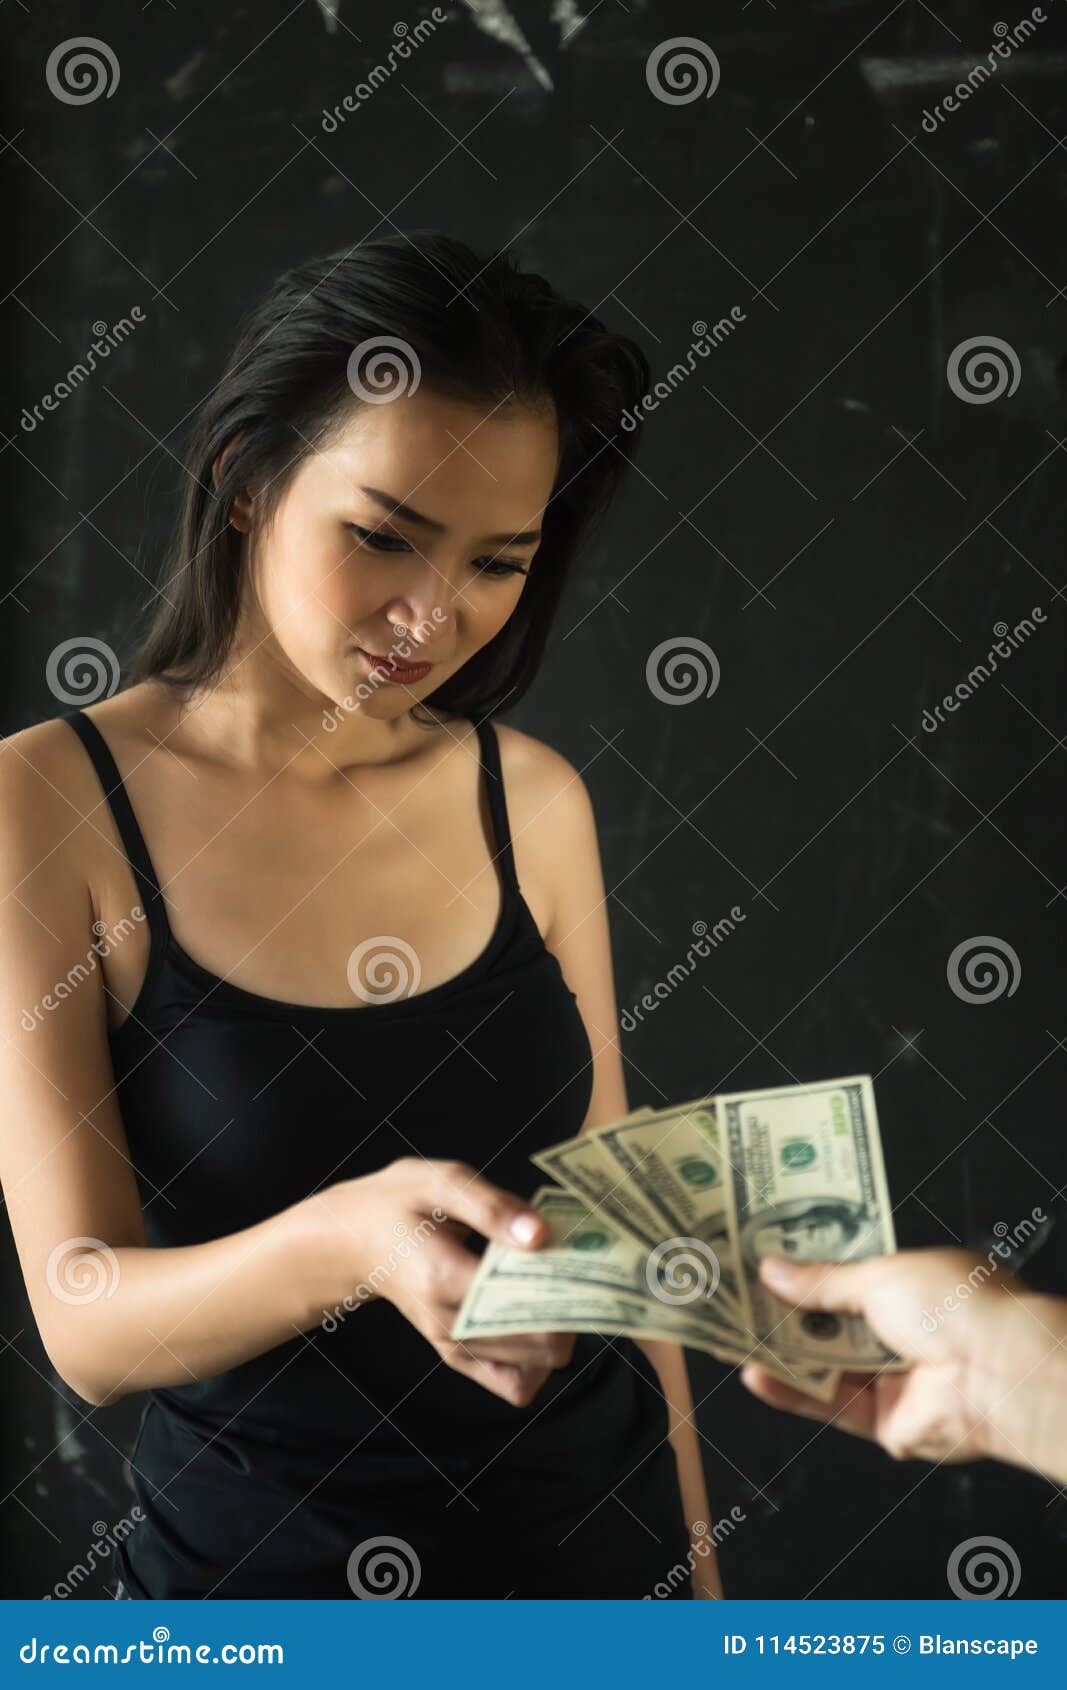 Sex pay bills